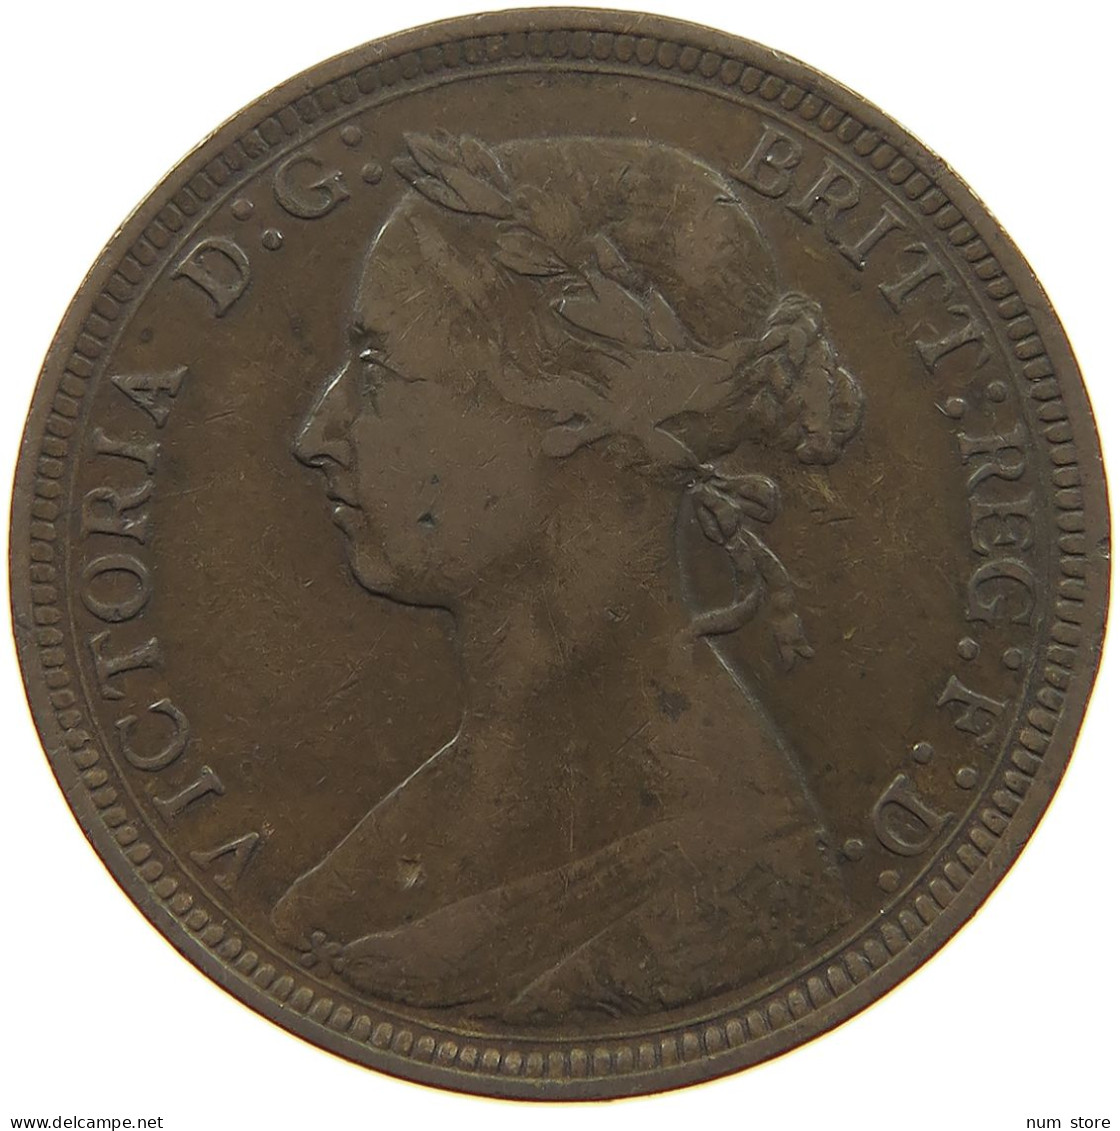 GREAT BRITAIN HALFPENNY 1893 Victoria 1837-1901 #c080 0331 - C. 1/2 Penny